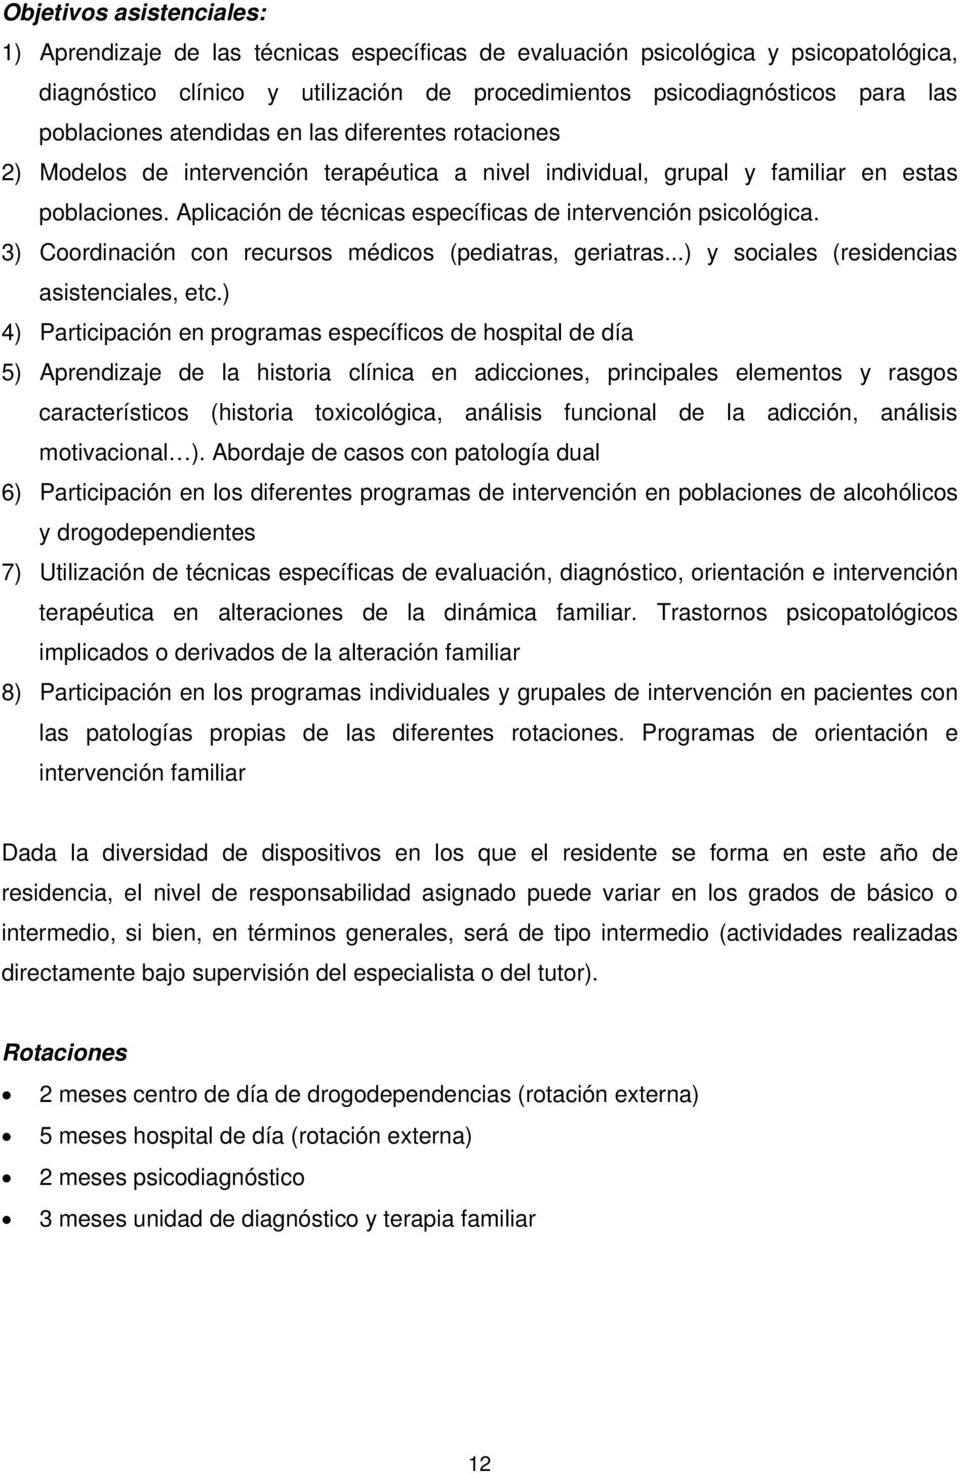 Aplicación de técnicas específicas de intervención psicológica. 3) Coordinación con recursos médicos (pediatras, geriatras...) y sociales (residencias asistenciales, etc.